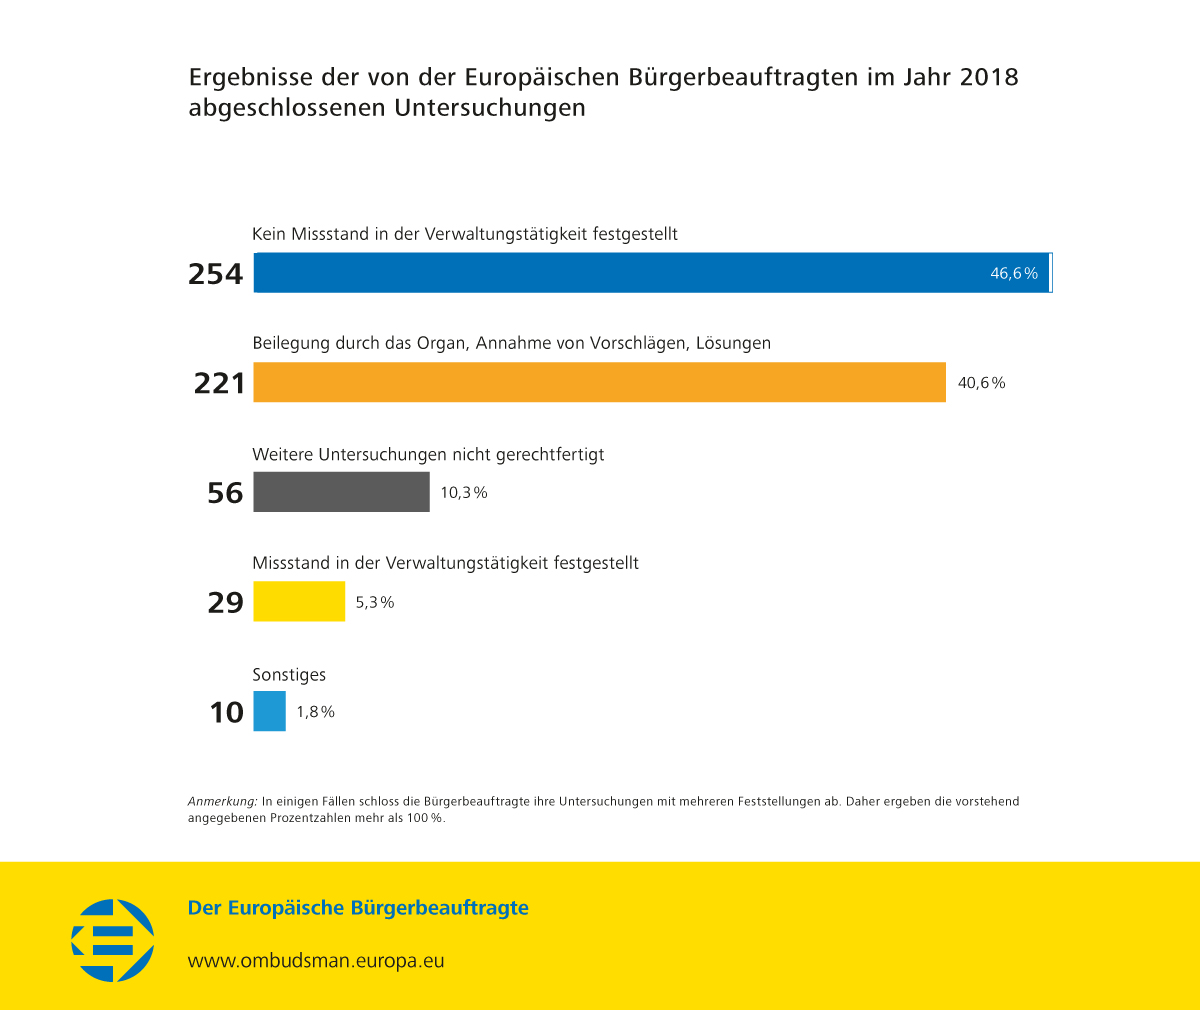 Ergebnisse der von der Europäischen Bürgerbeauftragten im Jahr 2018 abgeschlossenen Untersuchungen